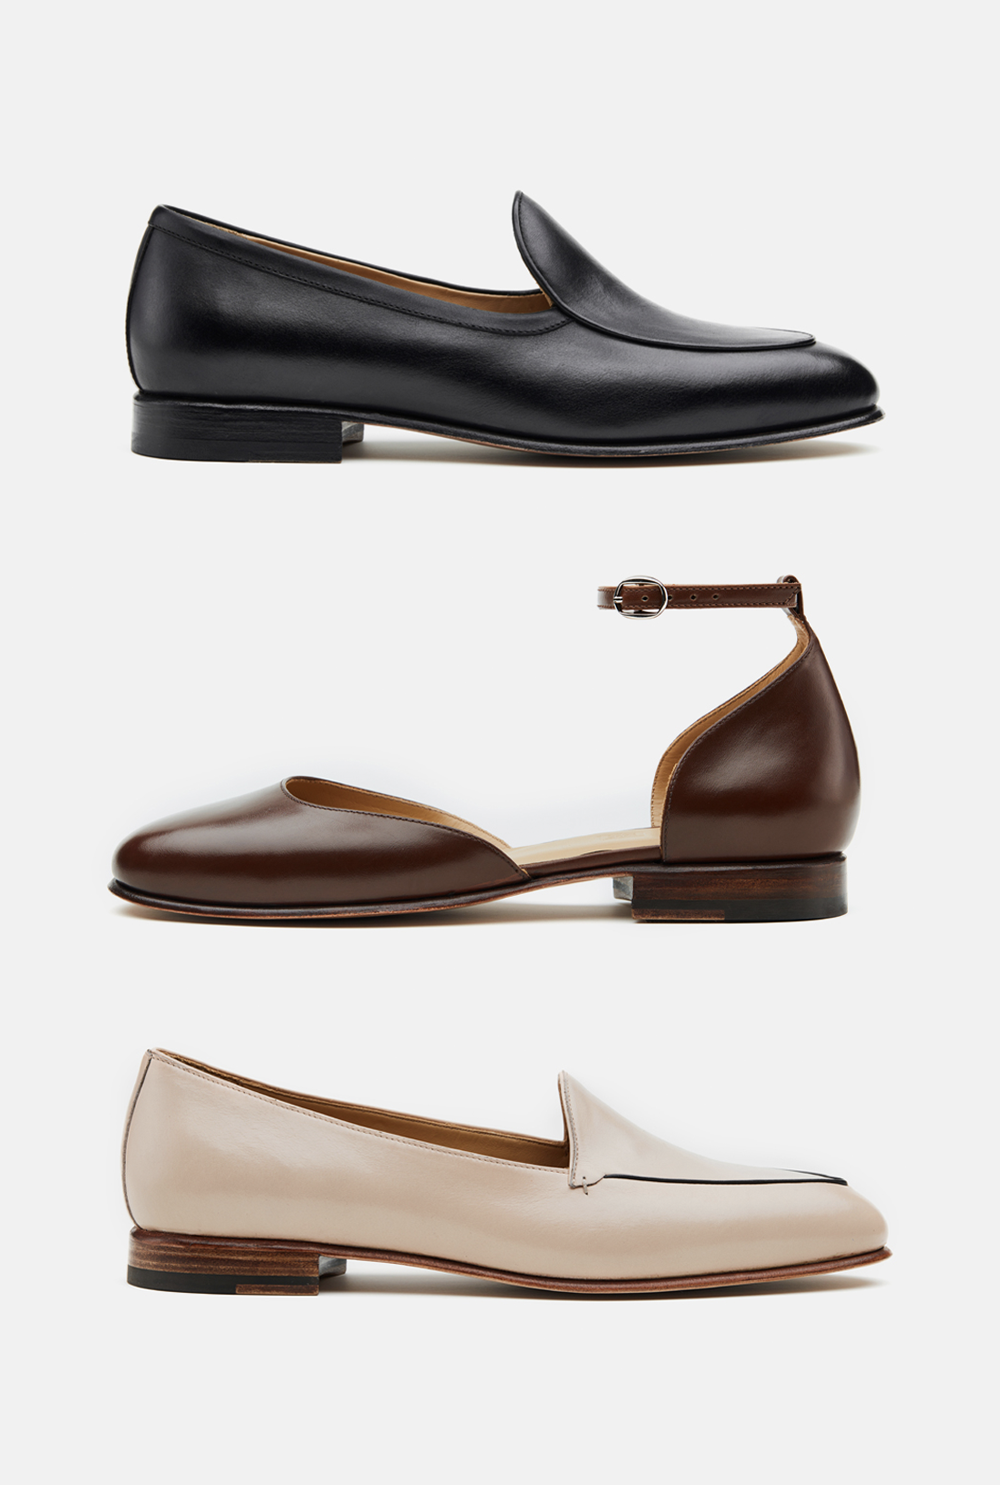 Новое имя: Razumno — многообещающая марка разумной обуви (фото 9)